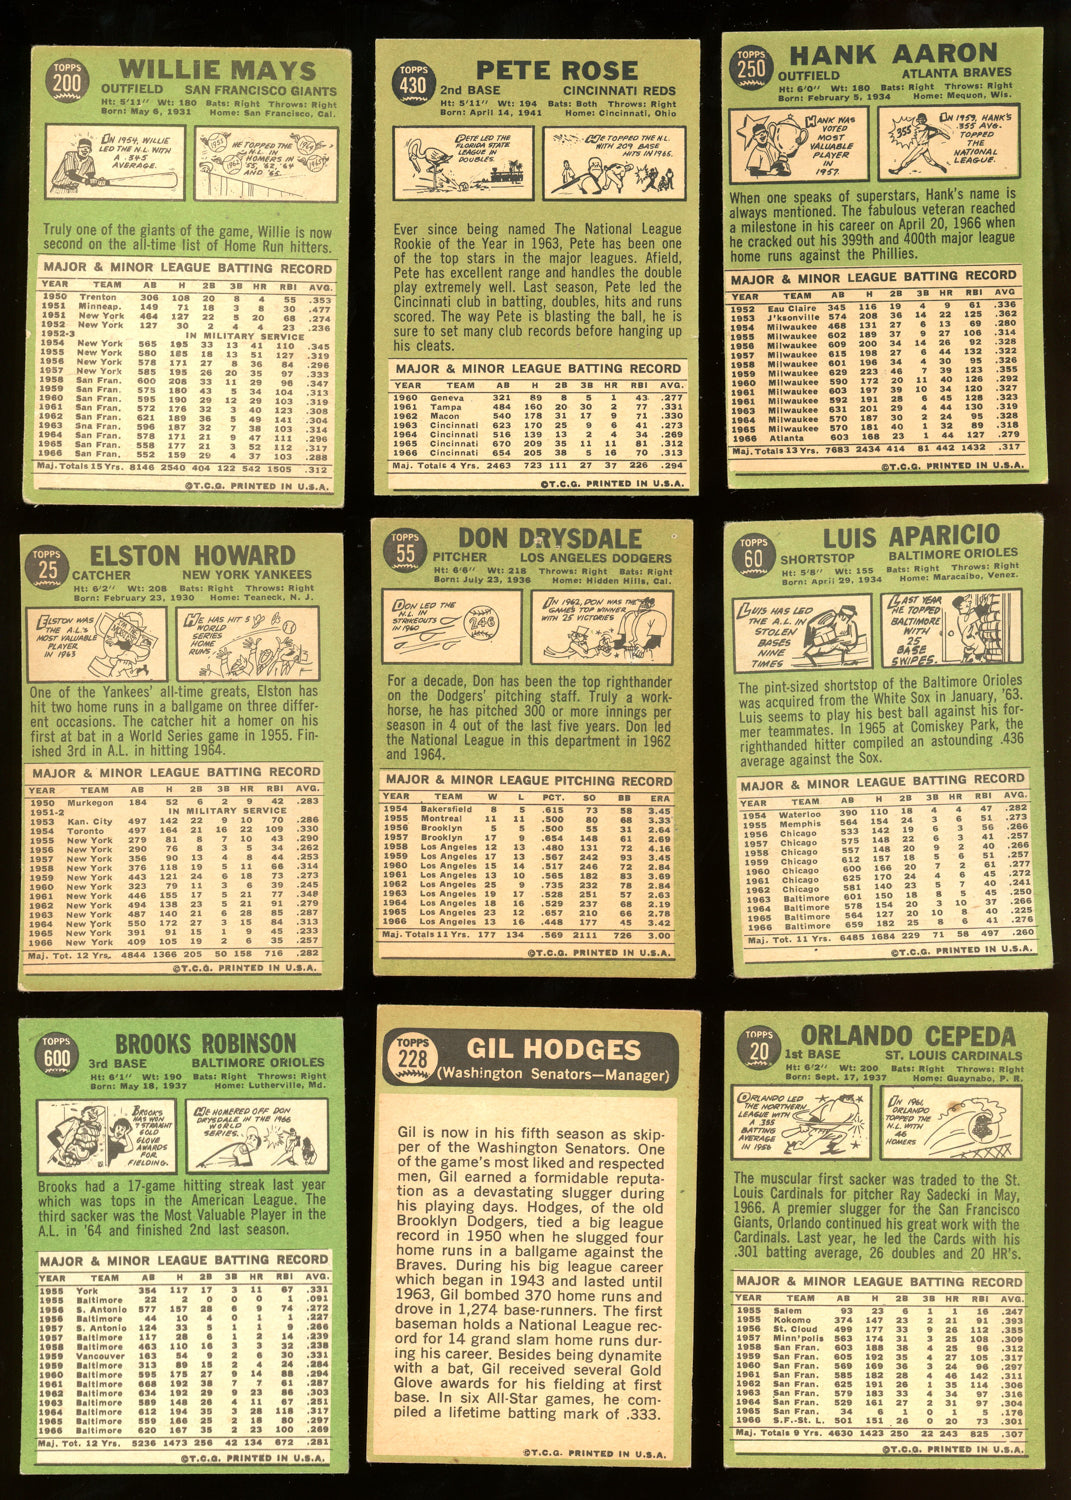 1967 TOPPS BASEBALL COMPLETE SET BREAK - 9 CARDS PER BOX